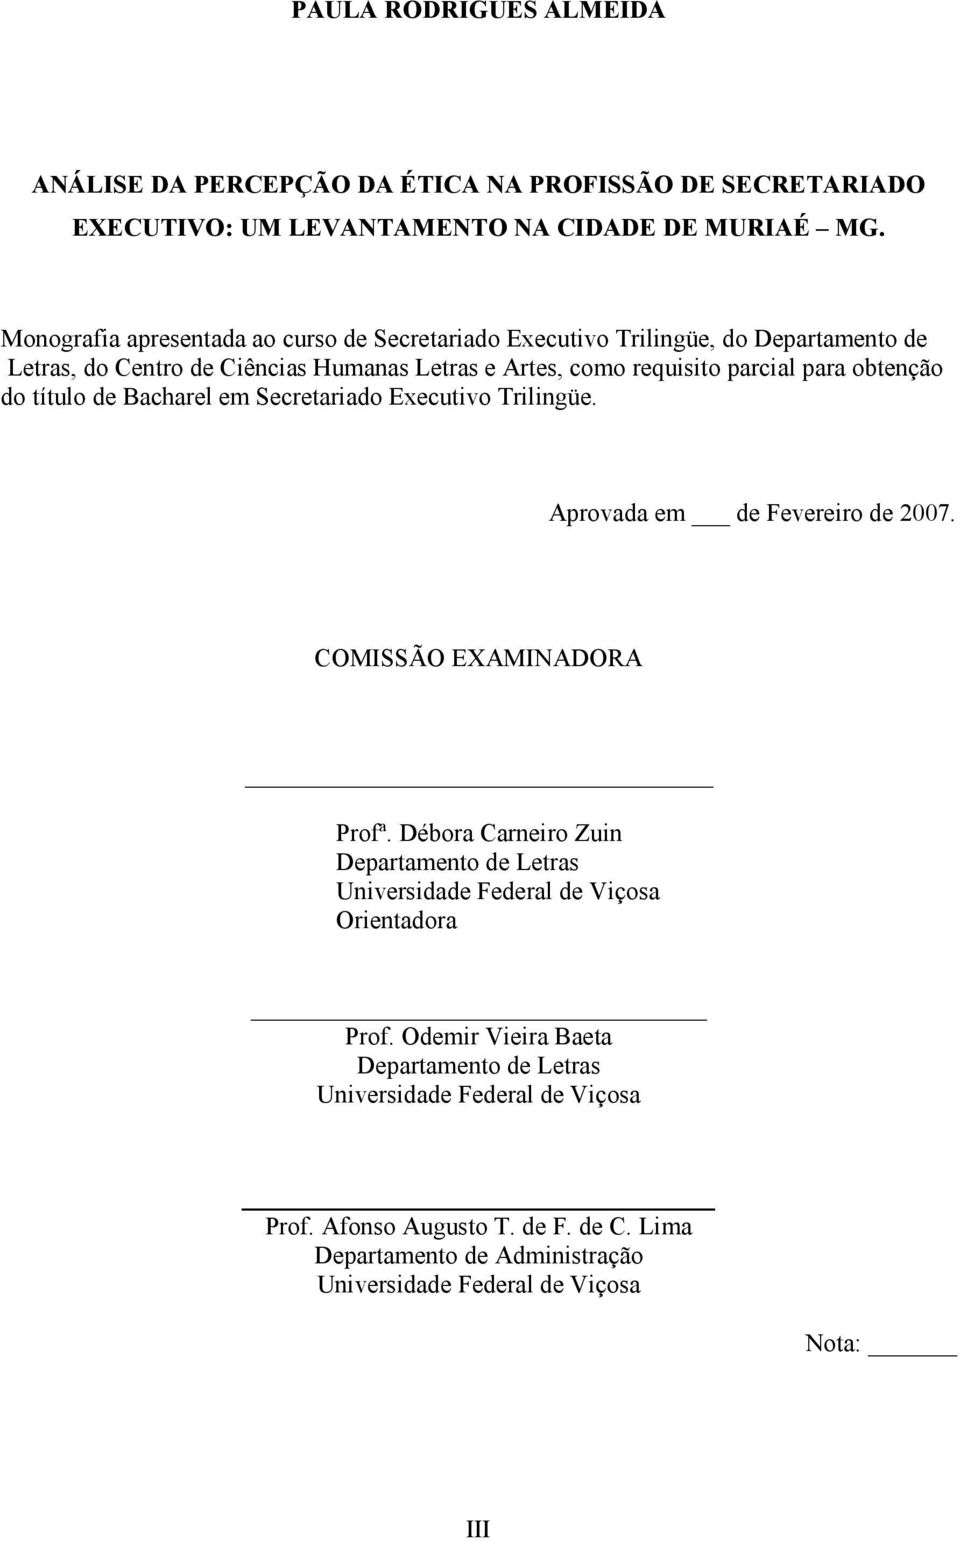 obtenção do título de Bacharel em Secretariado Executivo Trilingüe. Aprovada em de Fevereiro de 2007. COMISSÃO EXAMINADORA Profª.